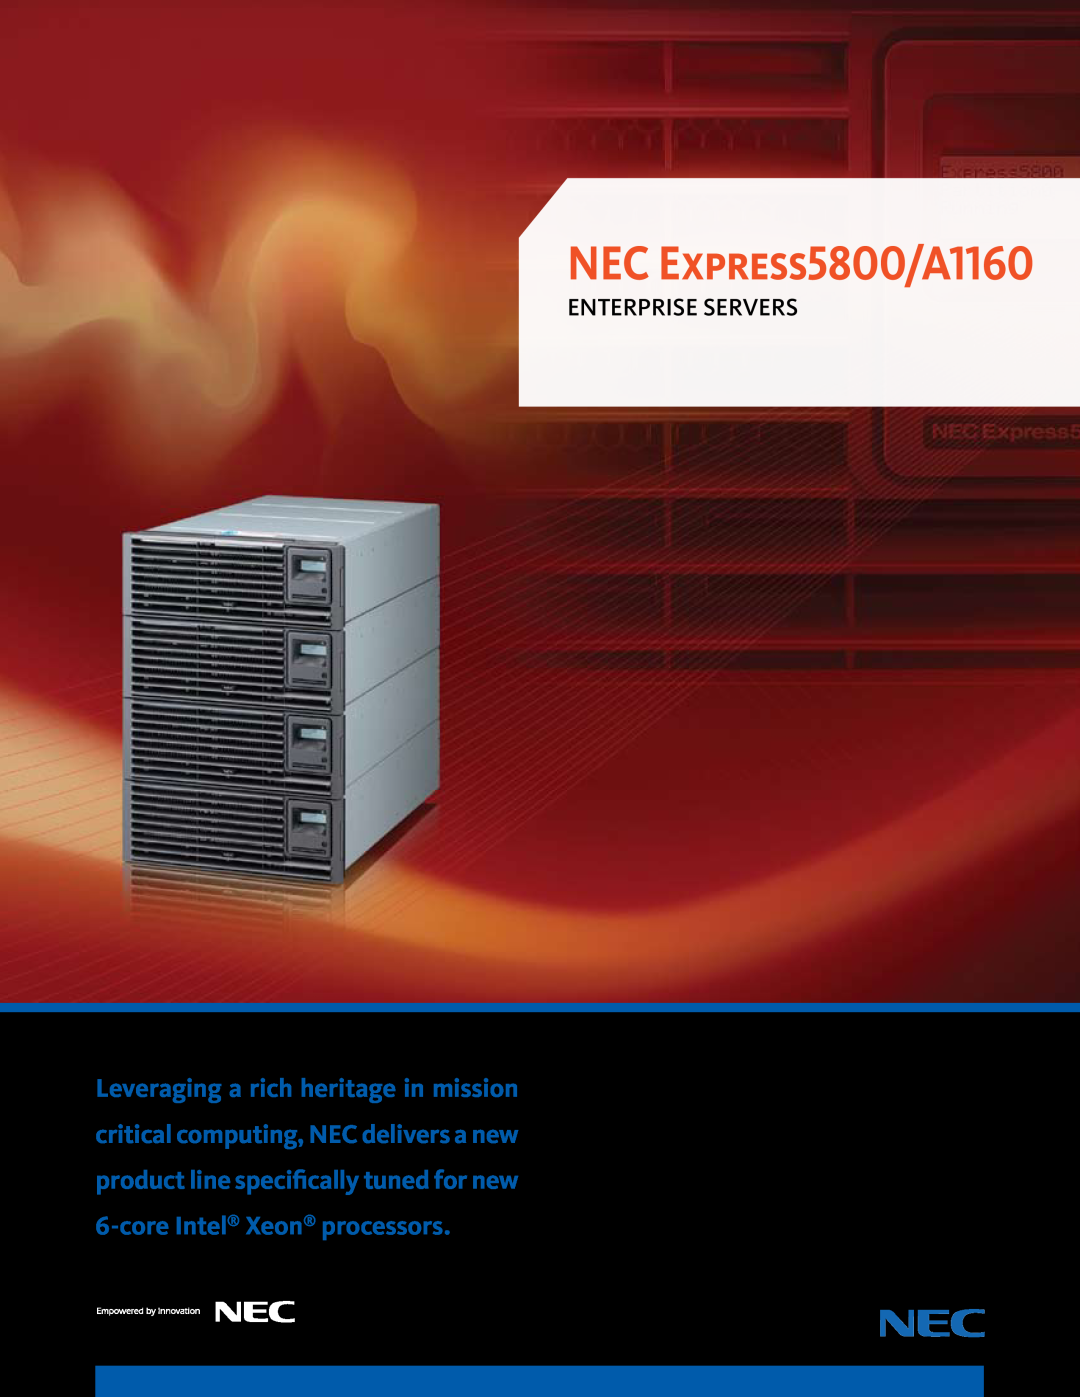 NEC ExpressA1160 manual NEC Express5800/A1160, enterprise servers 